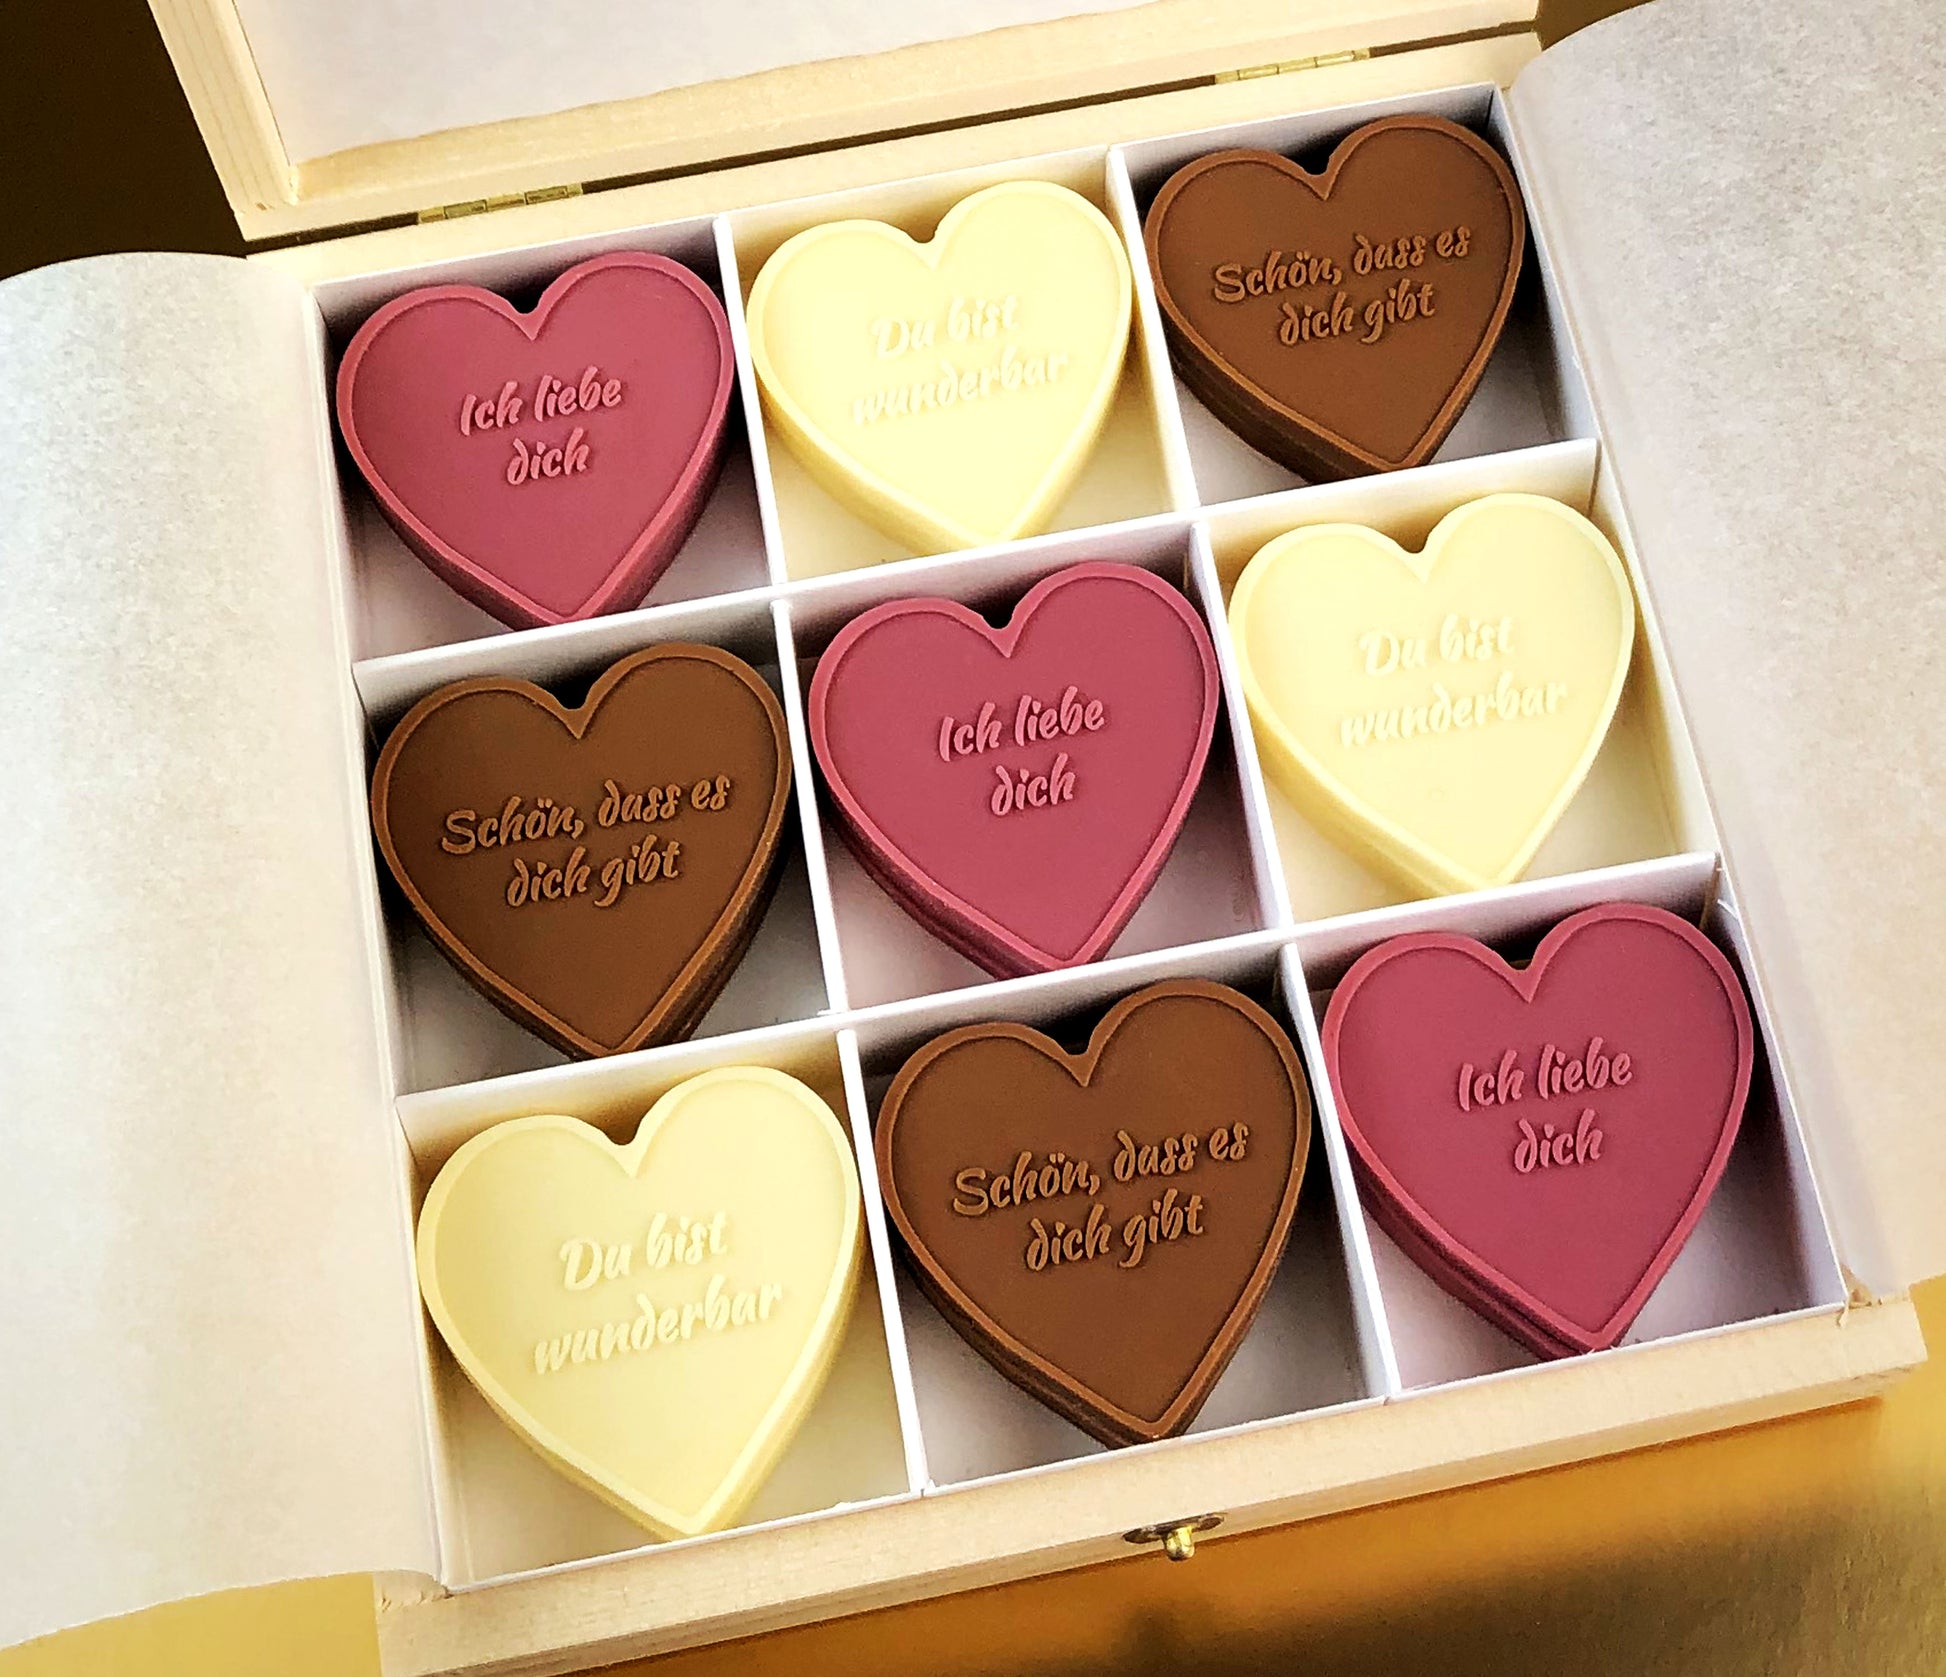 Regalo corazón y chocolates, ideal para enamorados y día de San